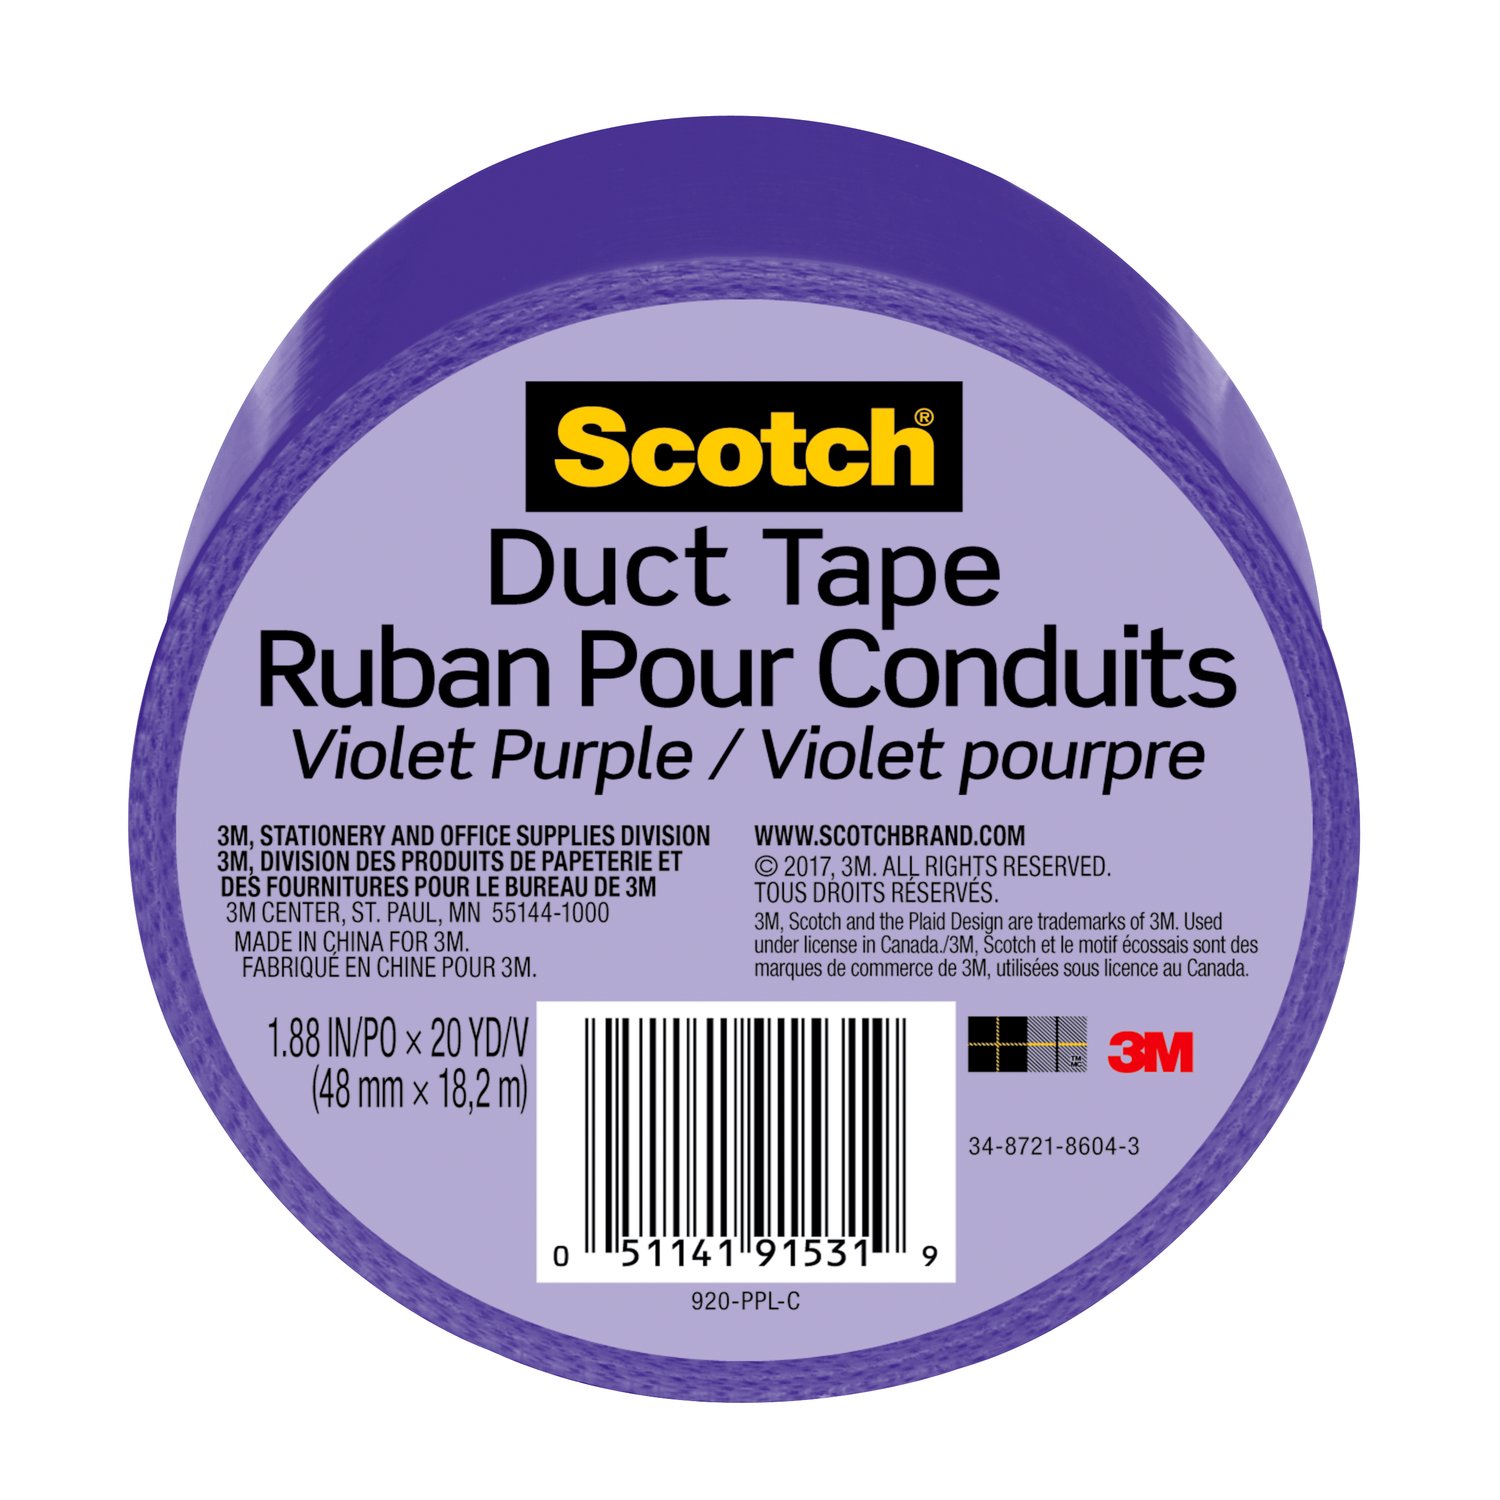 7100166506 - Scotch Duct Tape 920-PPL-C, 1.88 in x 20 yd (48 mm x 18,2 m), Purple